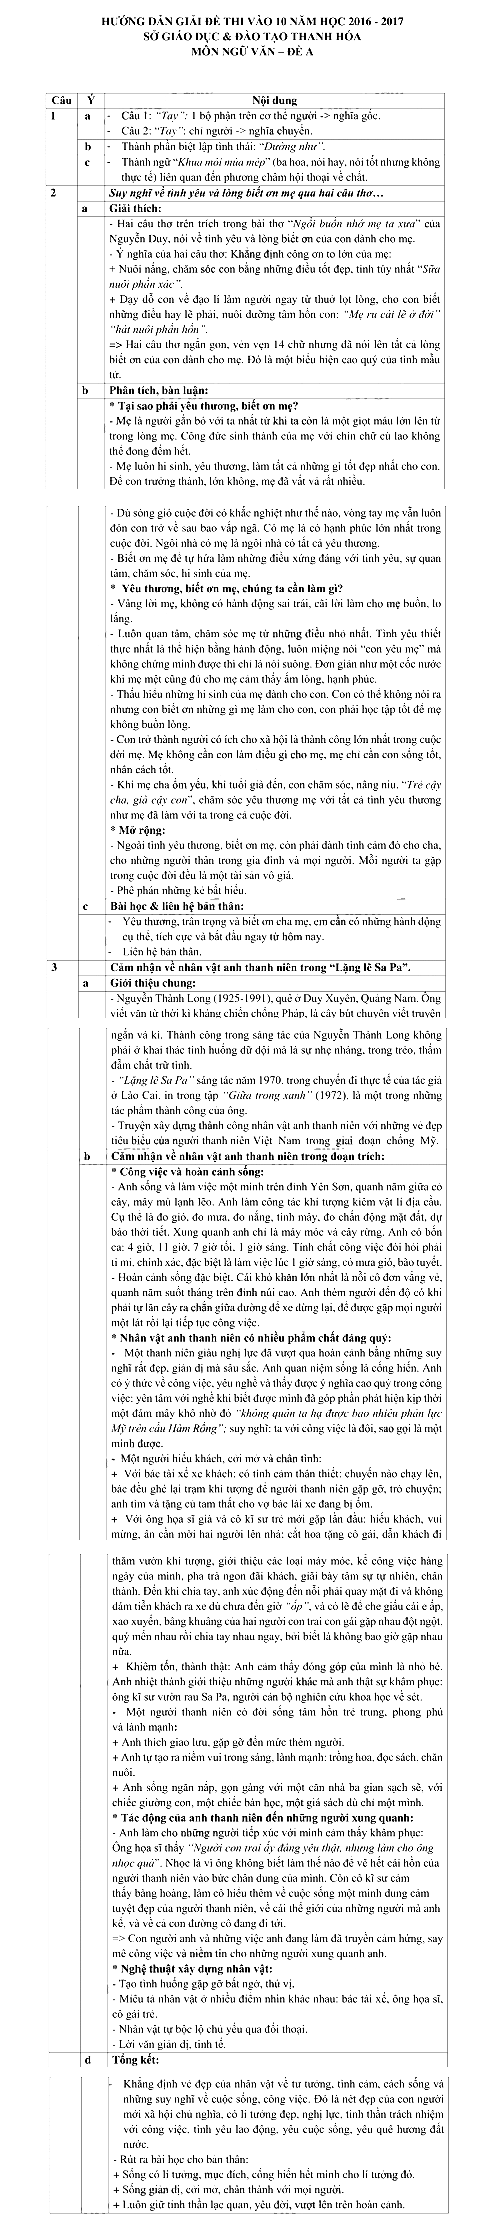 Đáp án đề thi vào lớp 10 môn Văn tỉnh Thanh Hóa năm 2016 - 2017